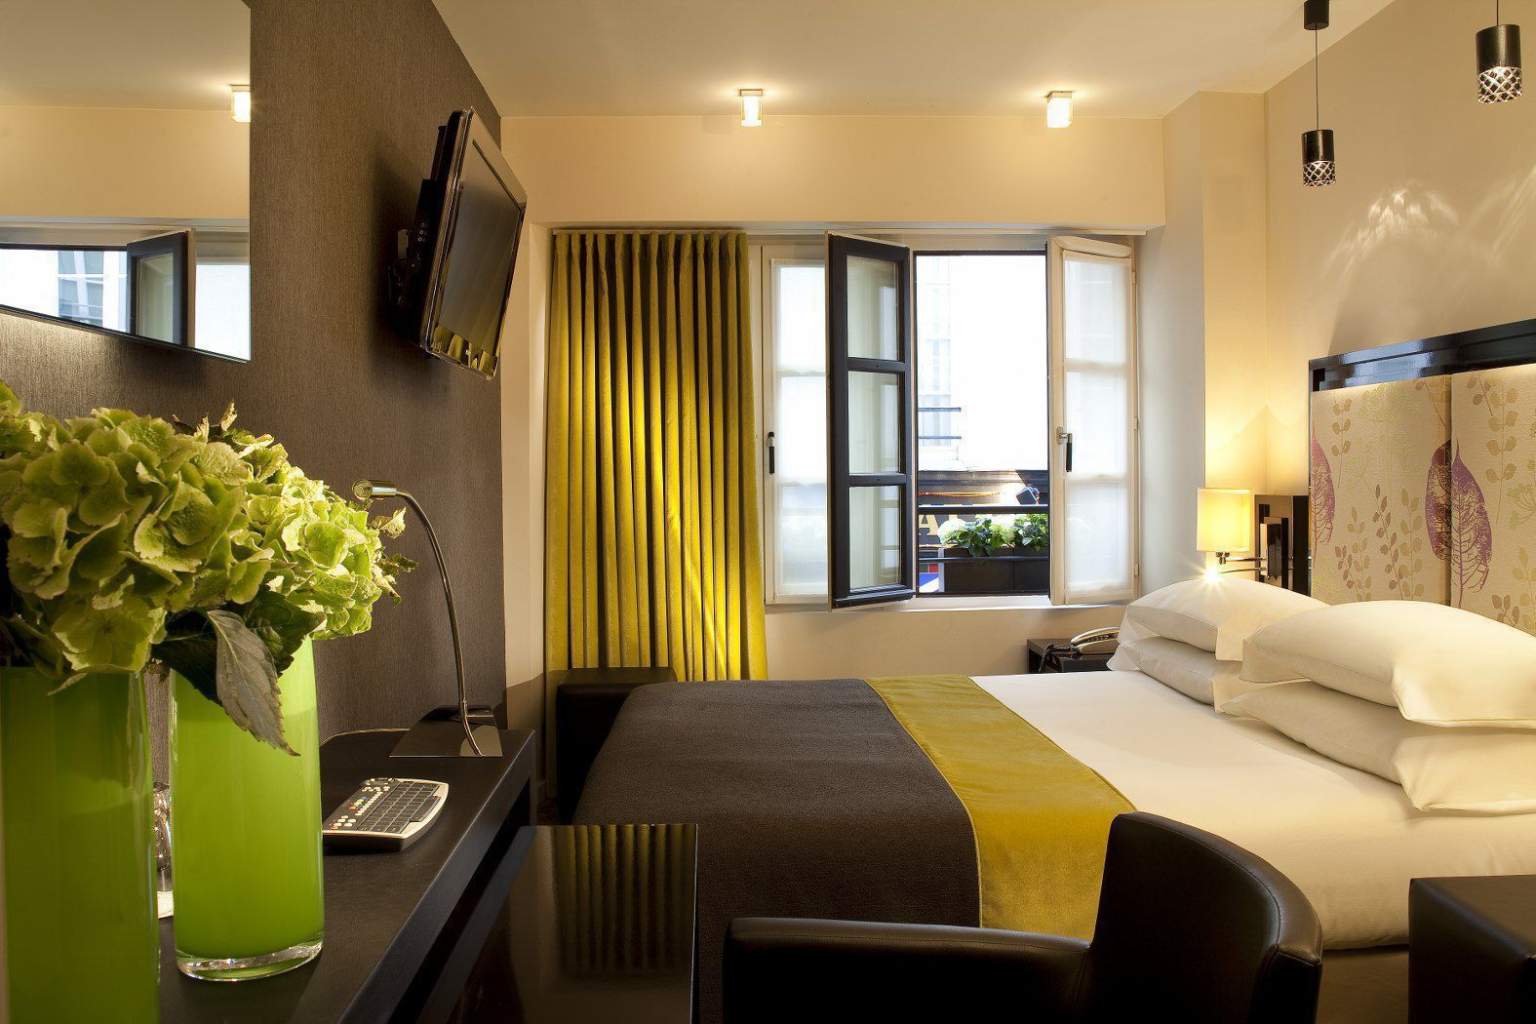 
                        パリのホテル・カロンのダブルルームの写真
                    